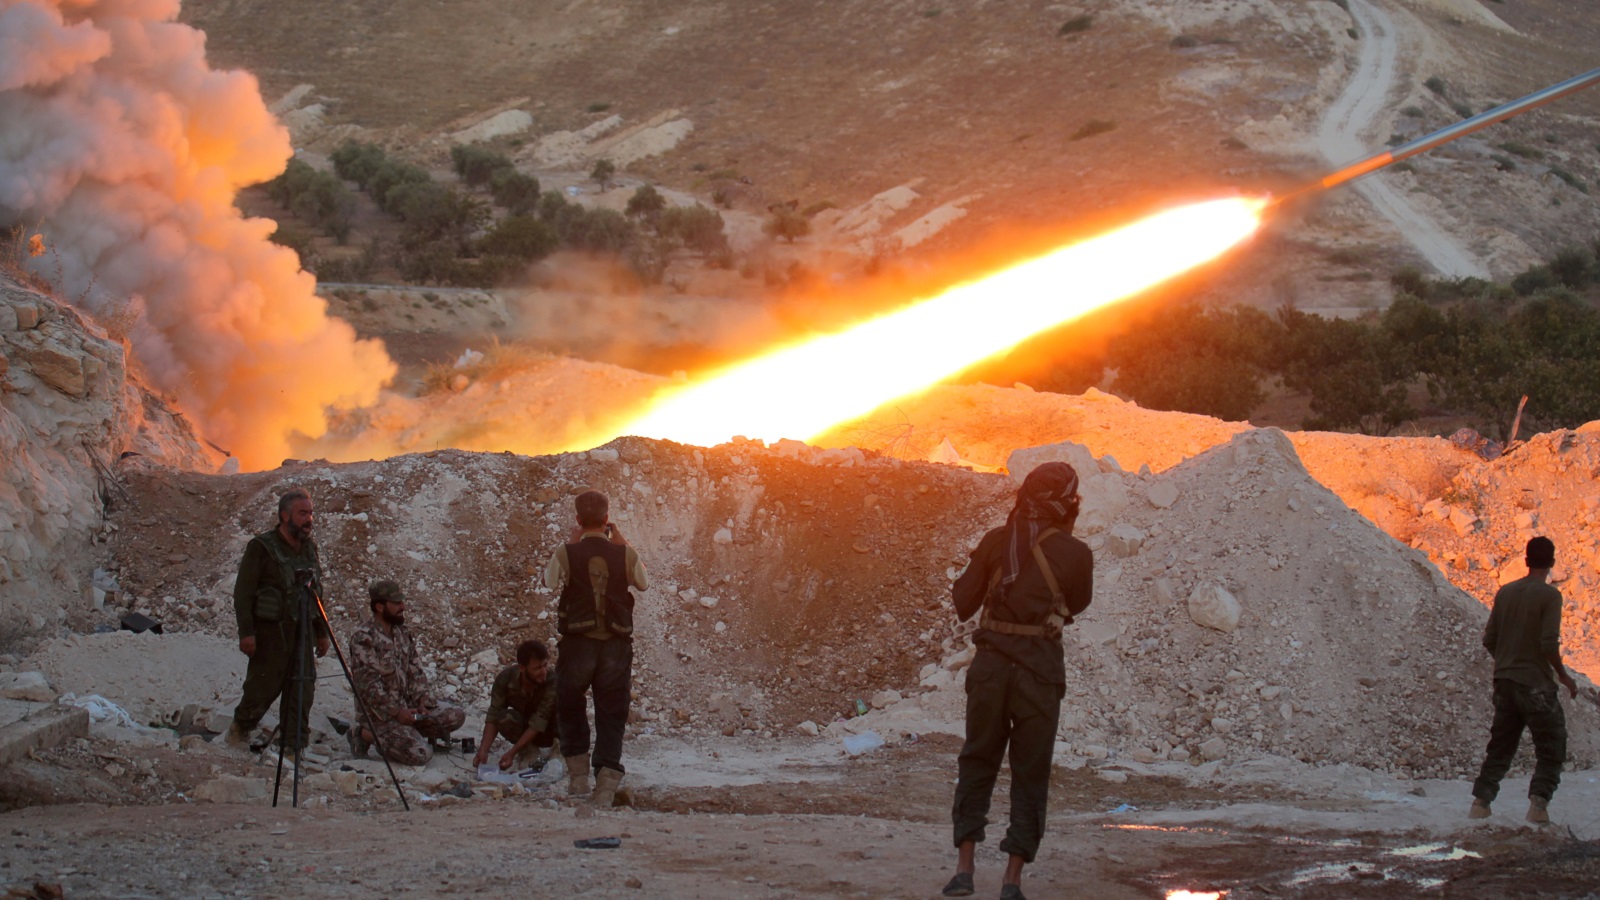 ‪مقاتلون من المعارضة يطلقون صاروخا من محيط مدينة حلفايا بريف حماة‬ (رويترز-أرشيف)